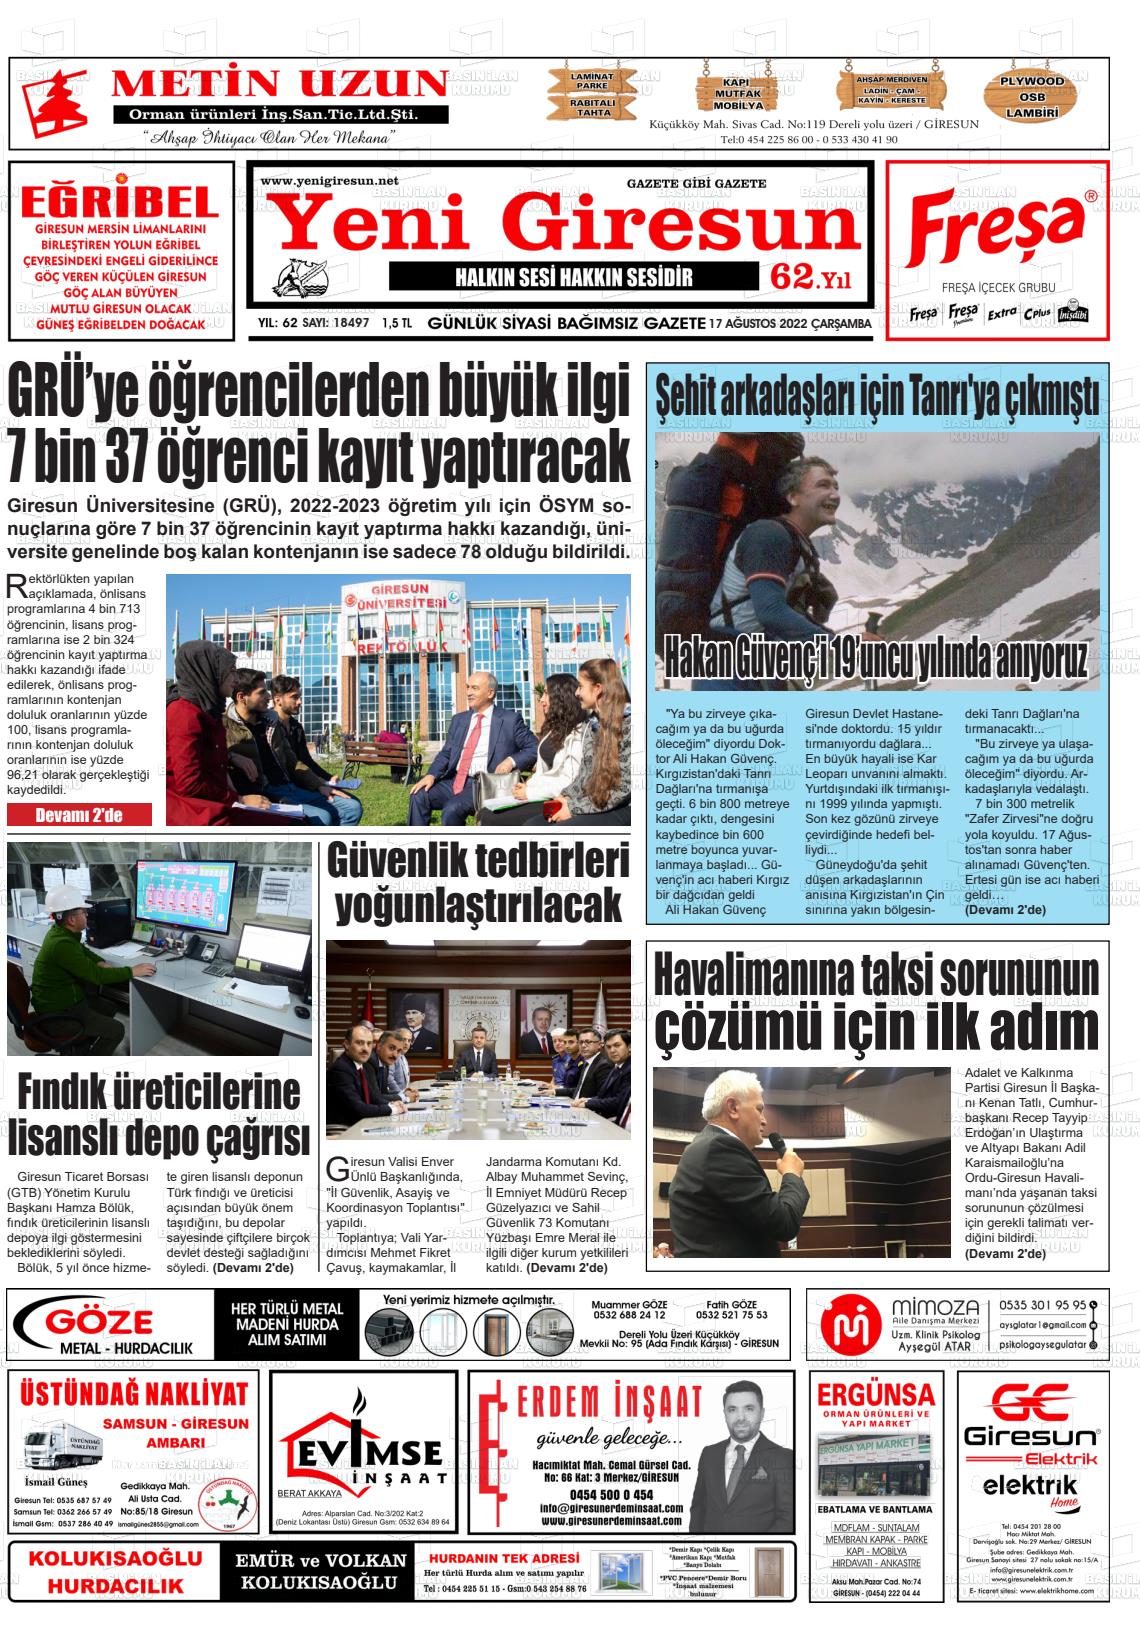 17 Ağustos 2022 Yeni Giresun Gazete Manşeti